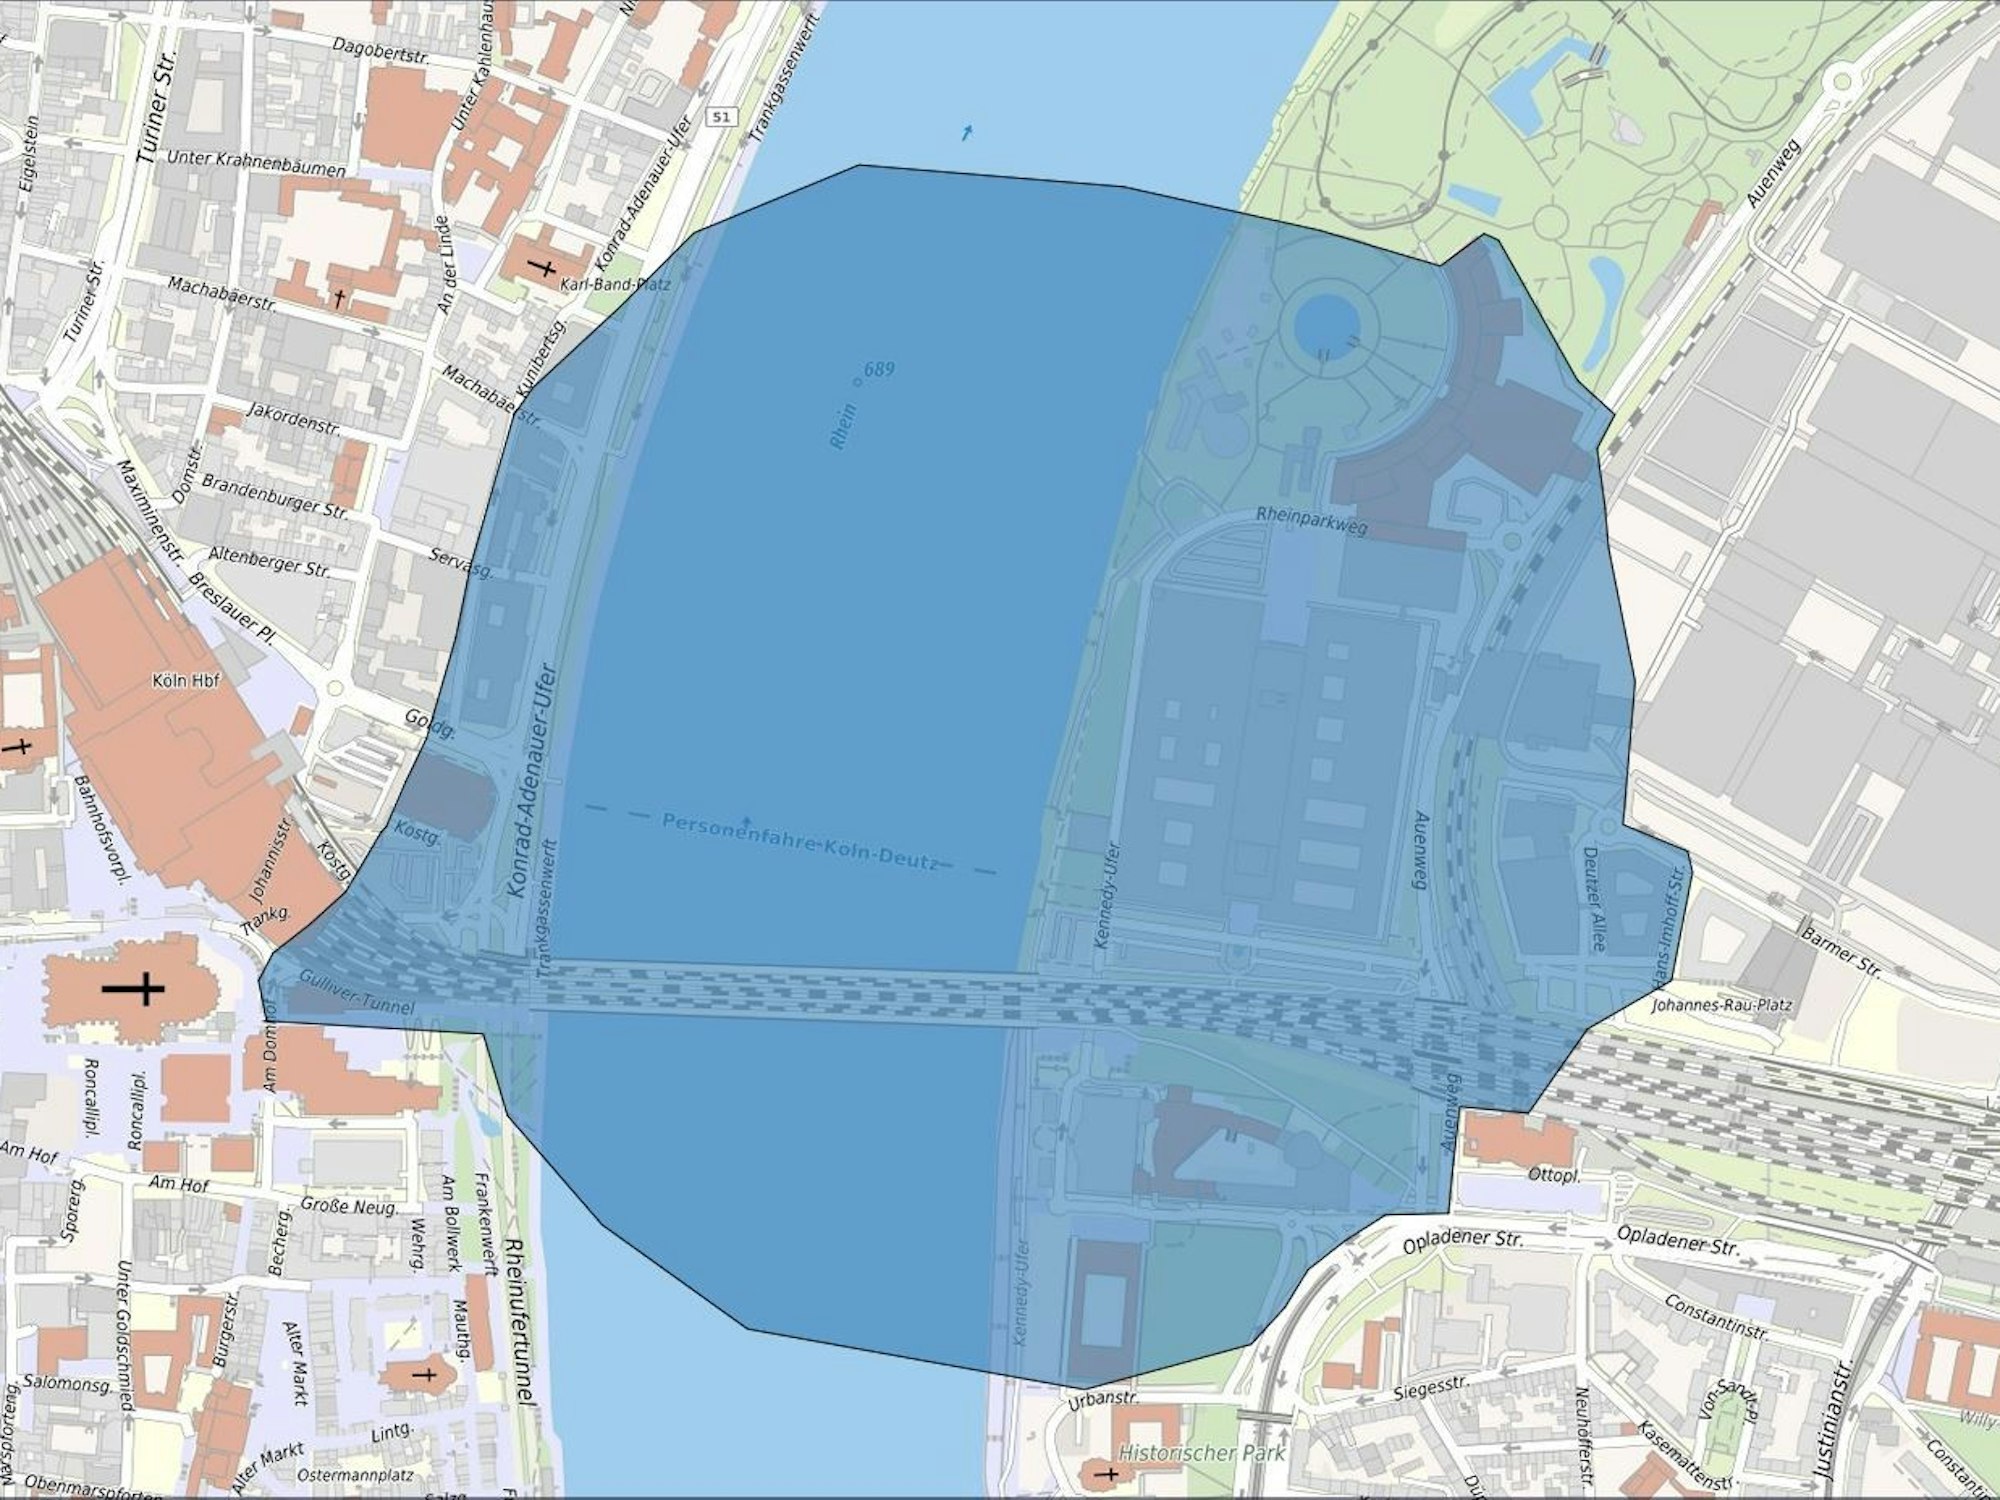 Karte mit Evakuierungsbereich in blau eingefärbt.